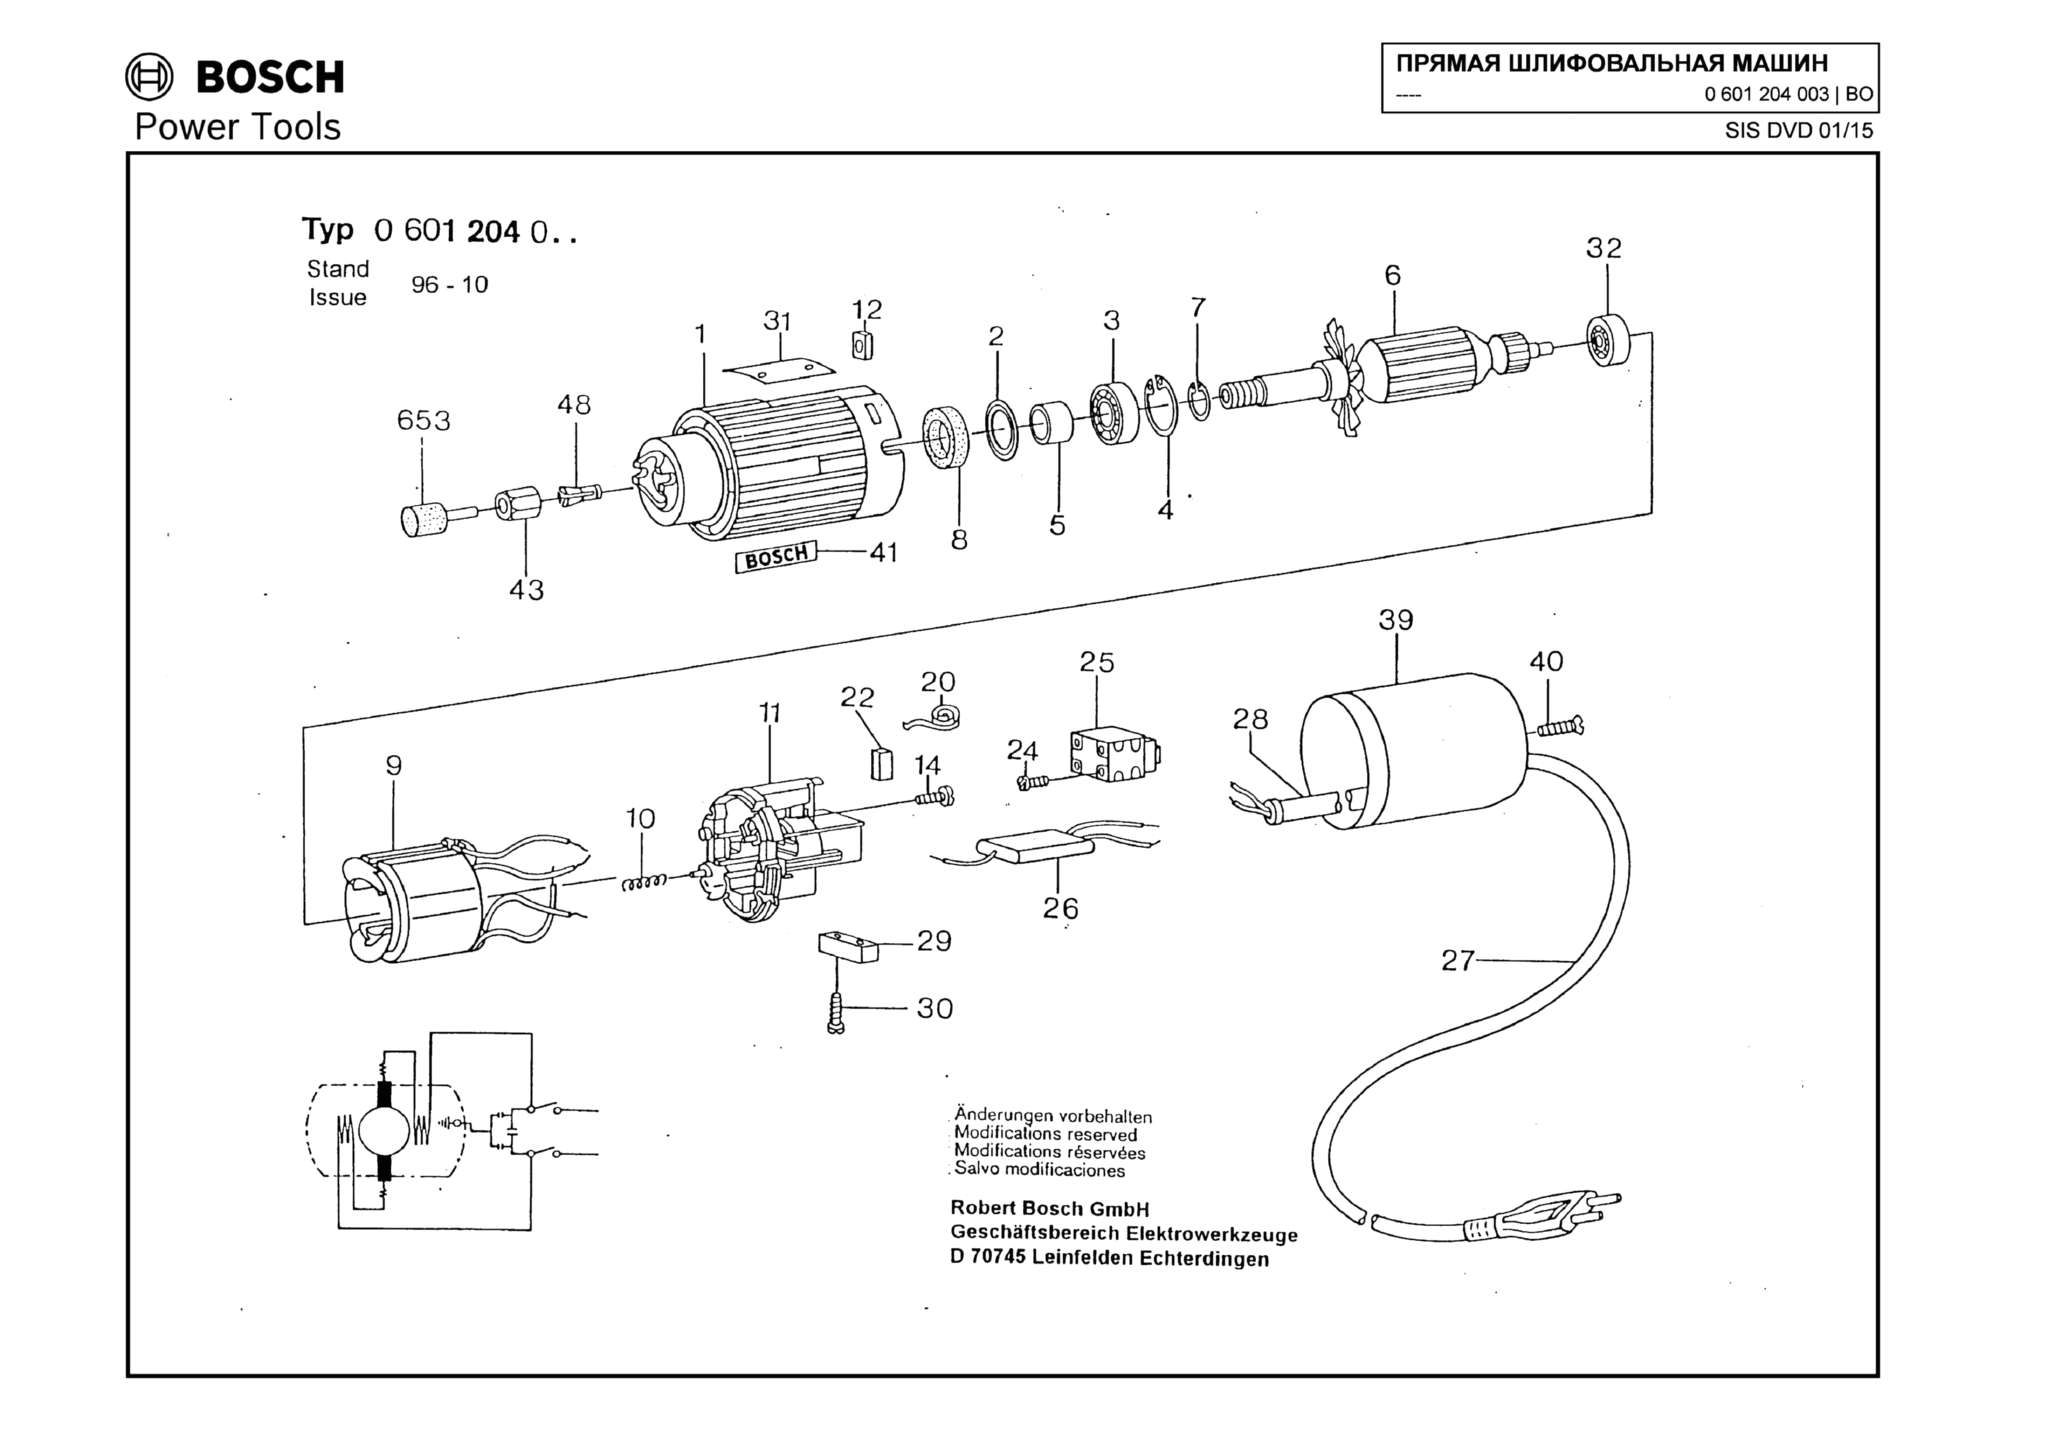 Запчасти, схема и деталировка Bosch (ТИП 0601204003)